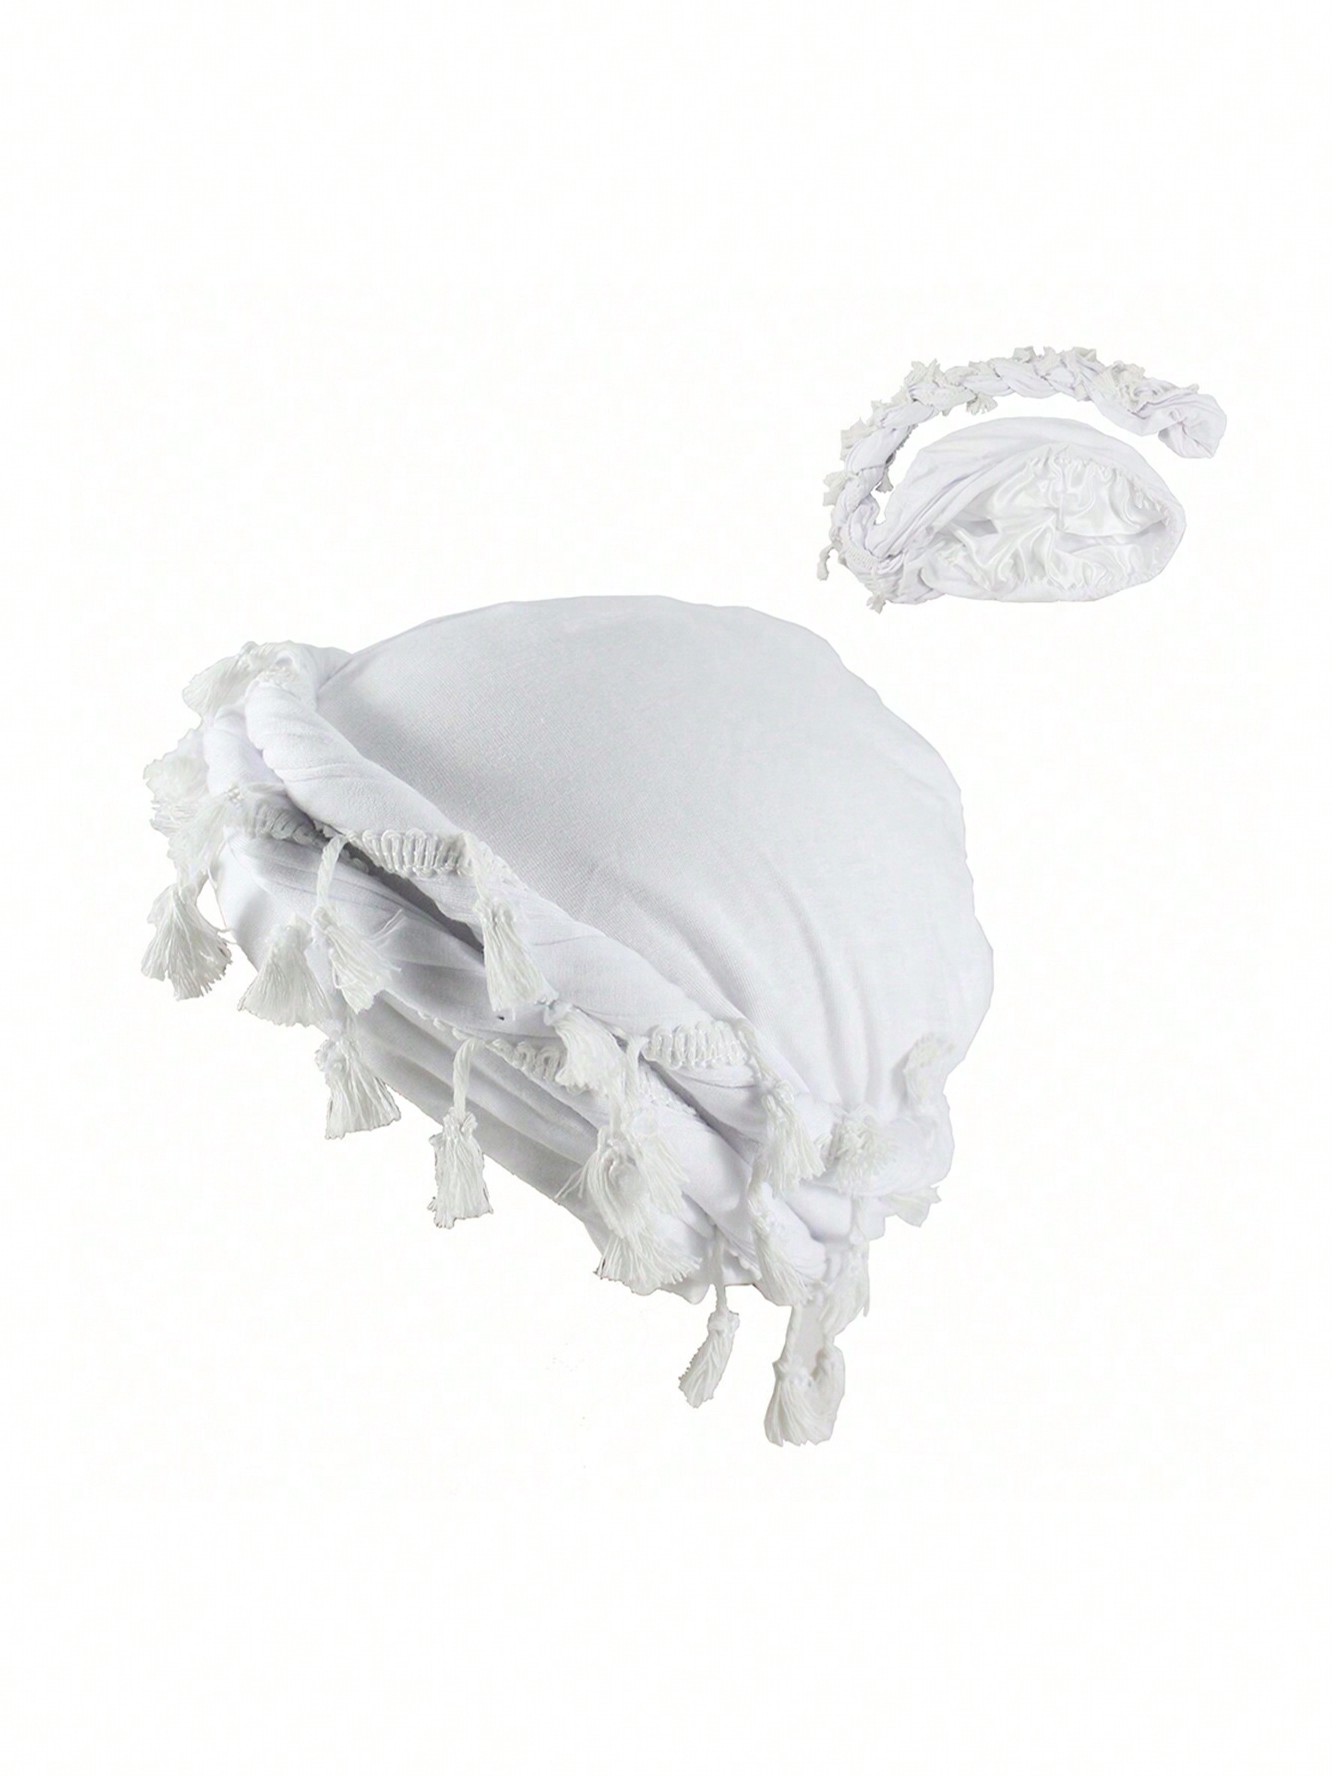 унисекс винтажная повязка на голову с кисточками, белый унисекс украшенная драгоценностями шляпа с подогревом шеи с капюшоном и лицом шапка балаклава шляпа для косплея